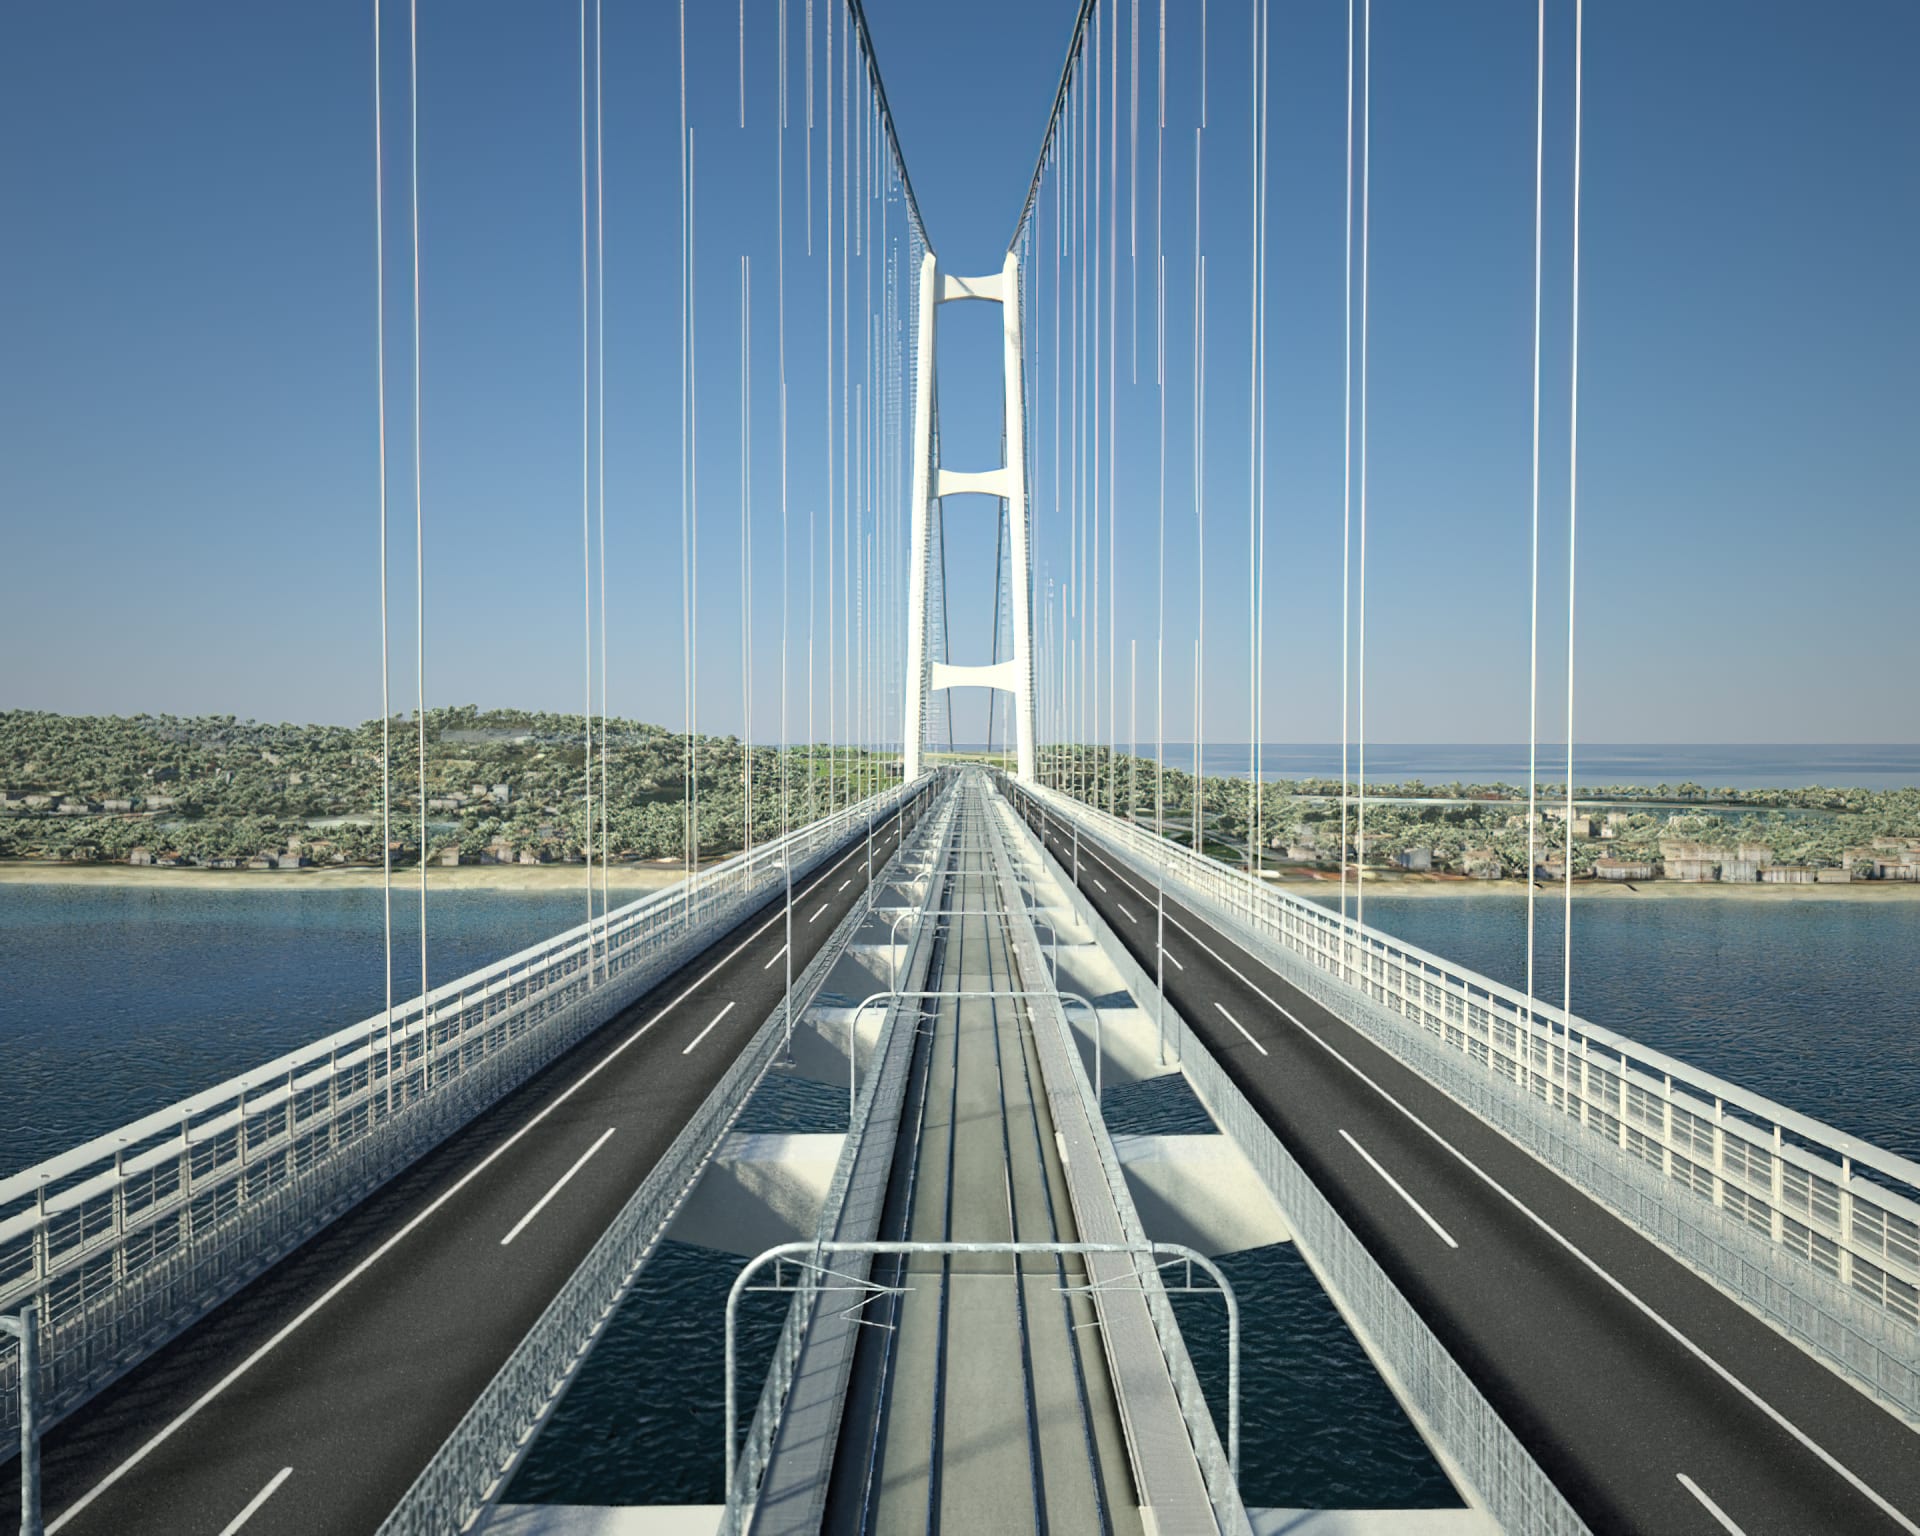 Pokud se plán dotáhne do konce, visutý most přes Messinskou úžinu bude měřit 3,2 kilometru a stane se nejdelším na světě svého druhu